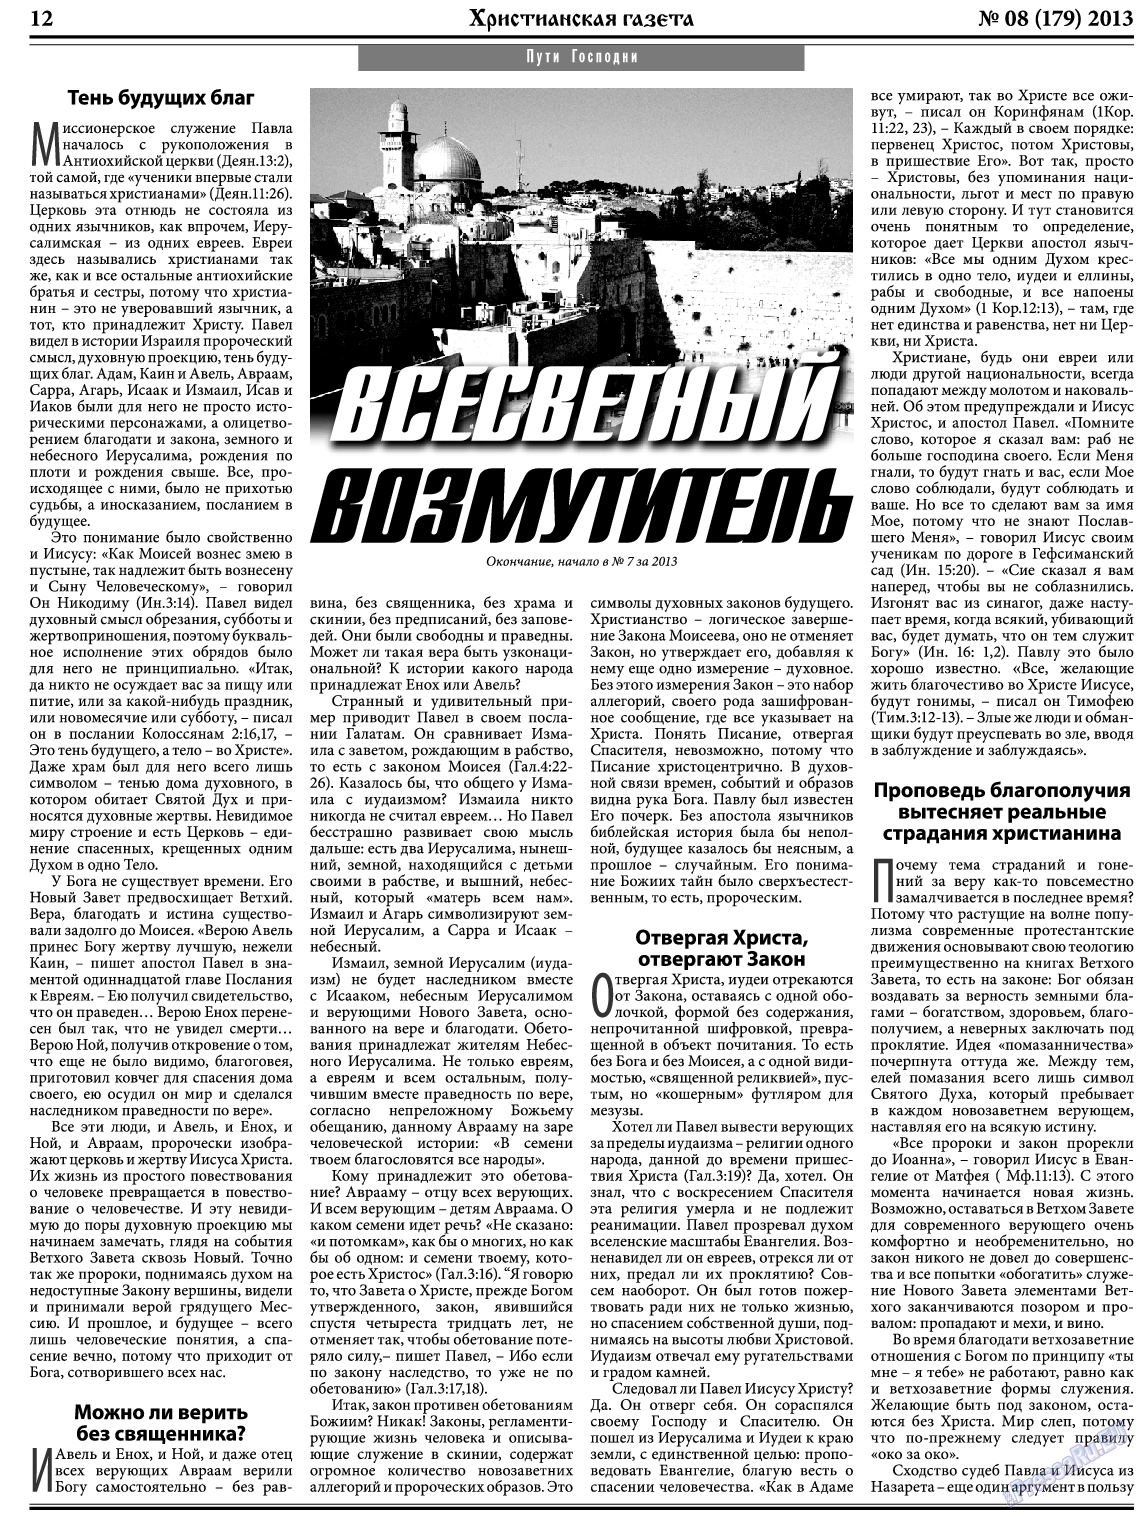 Христианская газета, газета. 2013 №8 стр.12